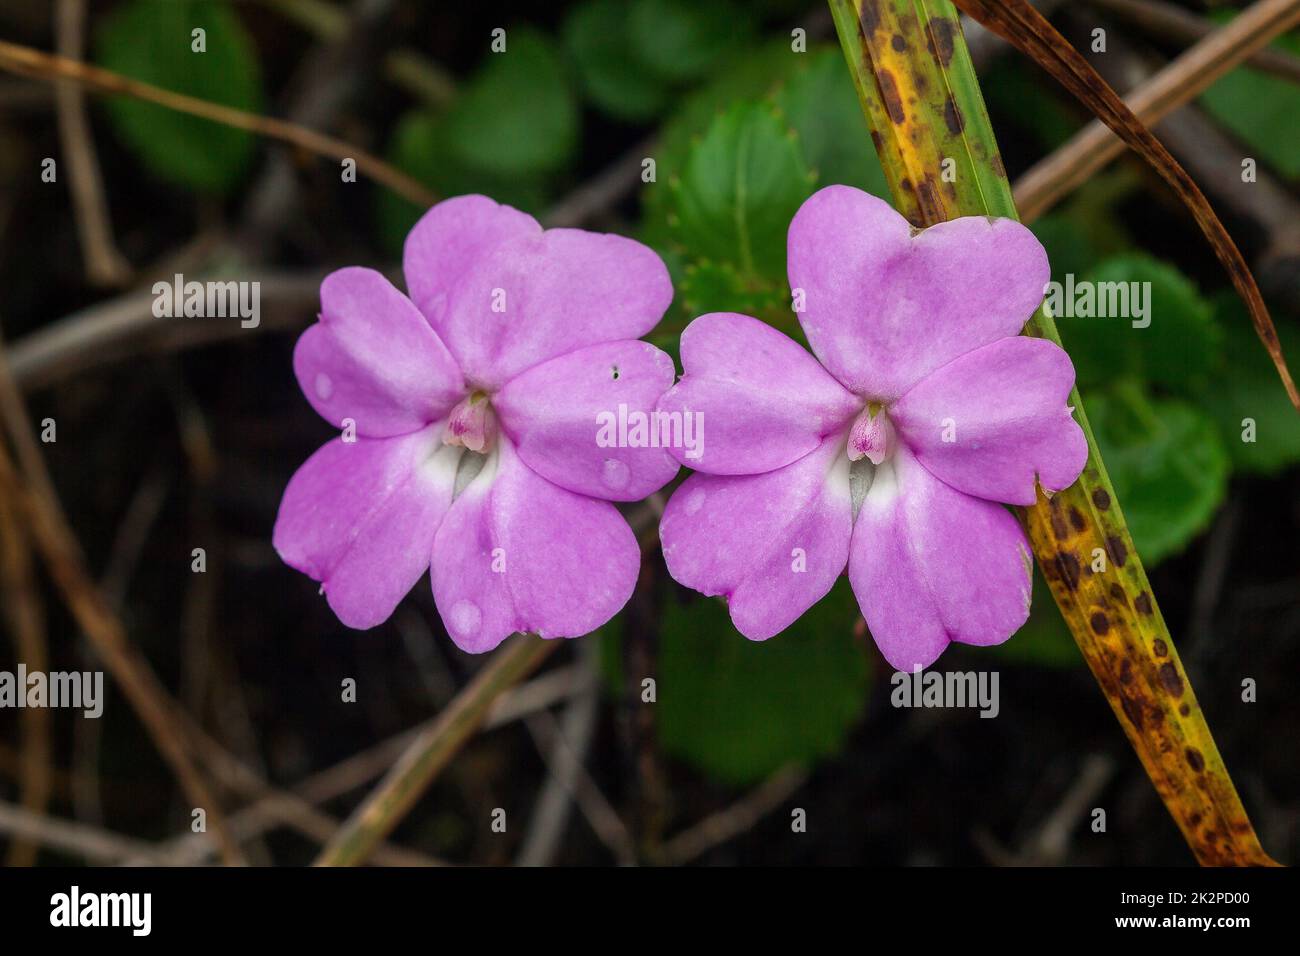 Impatiens violiflora dans la nature, fleurs violettes roses une seule plante ou en paires est une plante herbacée d'une hauteur maximale de 50 centimètres Banque D'Images